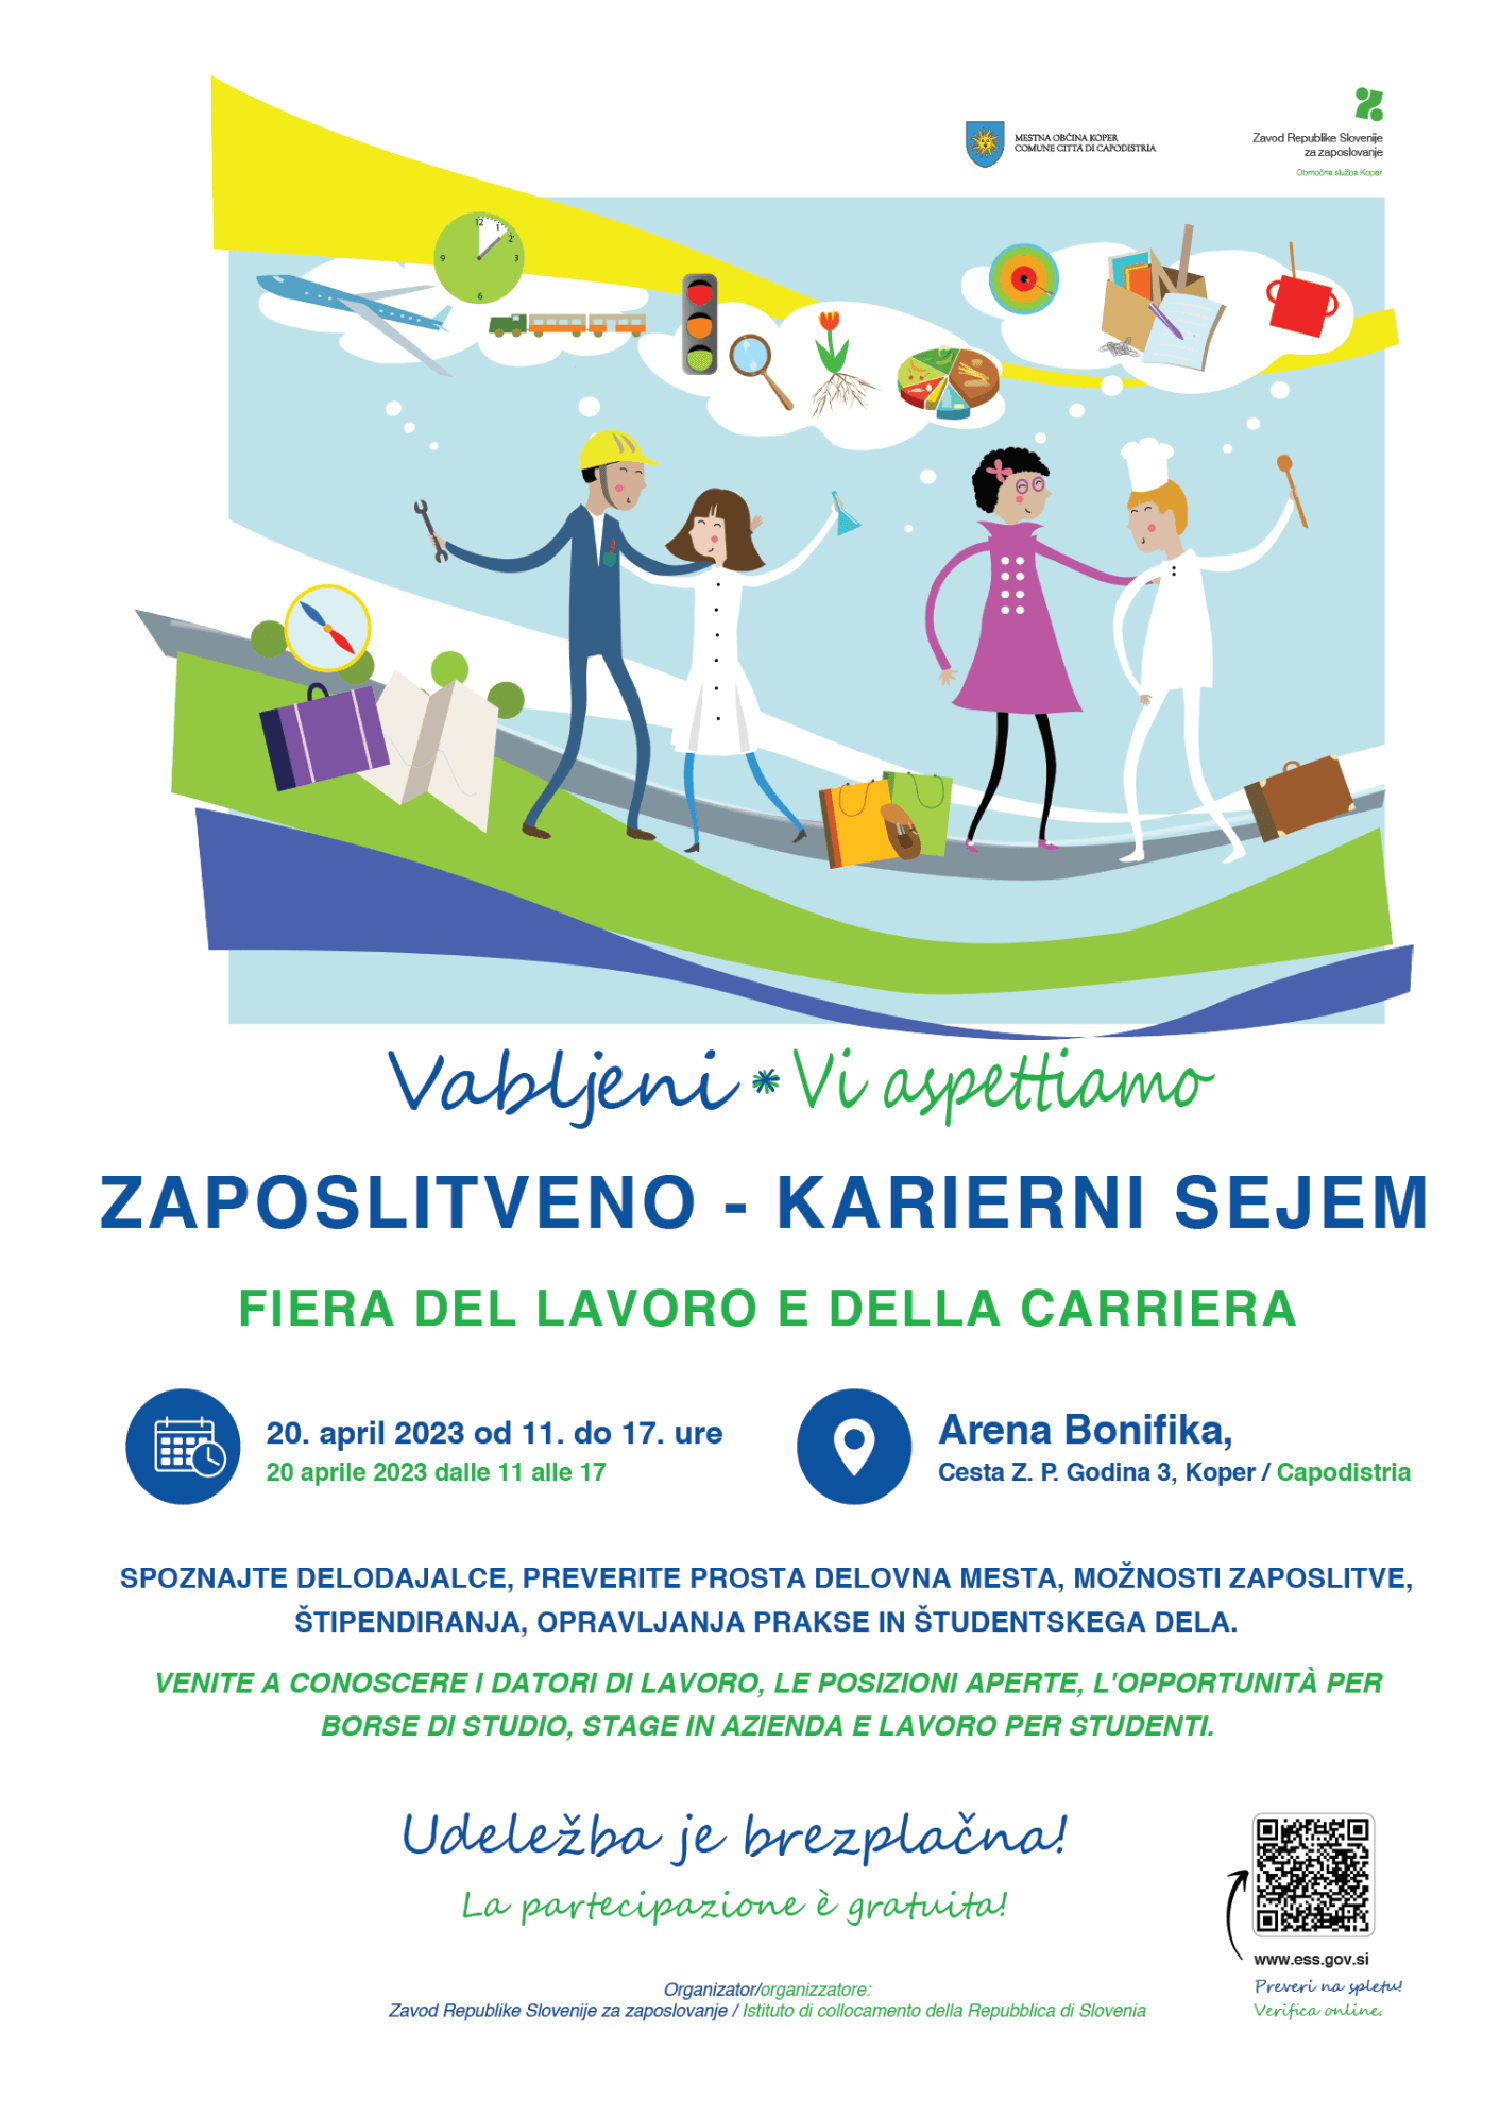 Plakat za zaposlitveno-karierni sejem v Kopru, 20. 4. 2023, od 11. do 17. ure, v prostorih Arene Bonifike